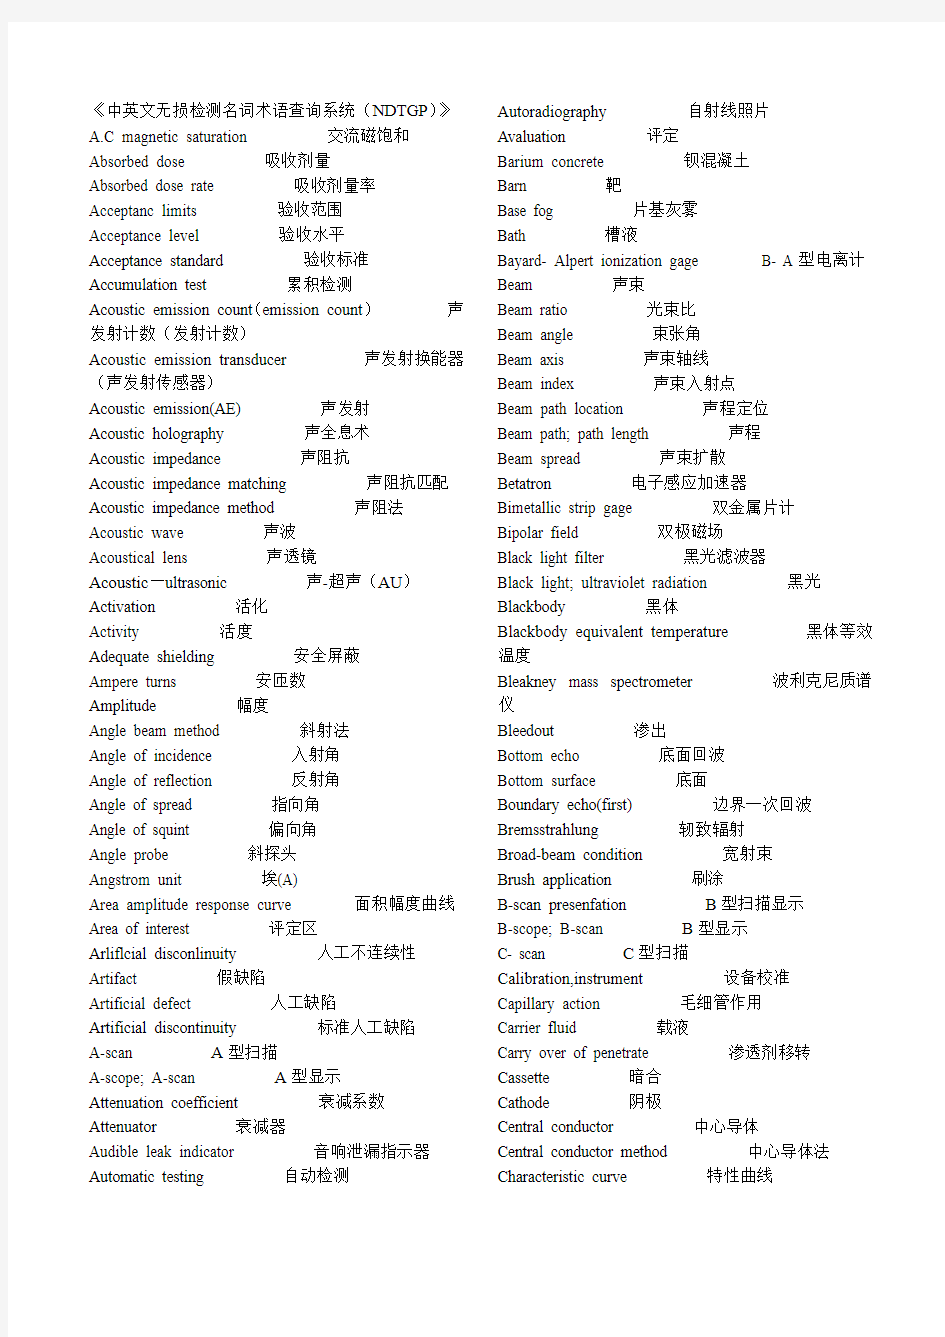 《中英文无损检测名词术语查询系统(NDTGP)》